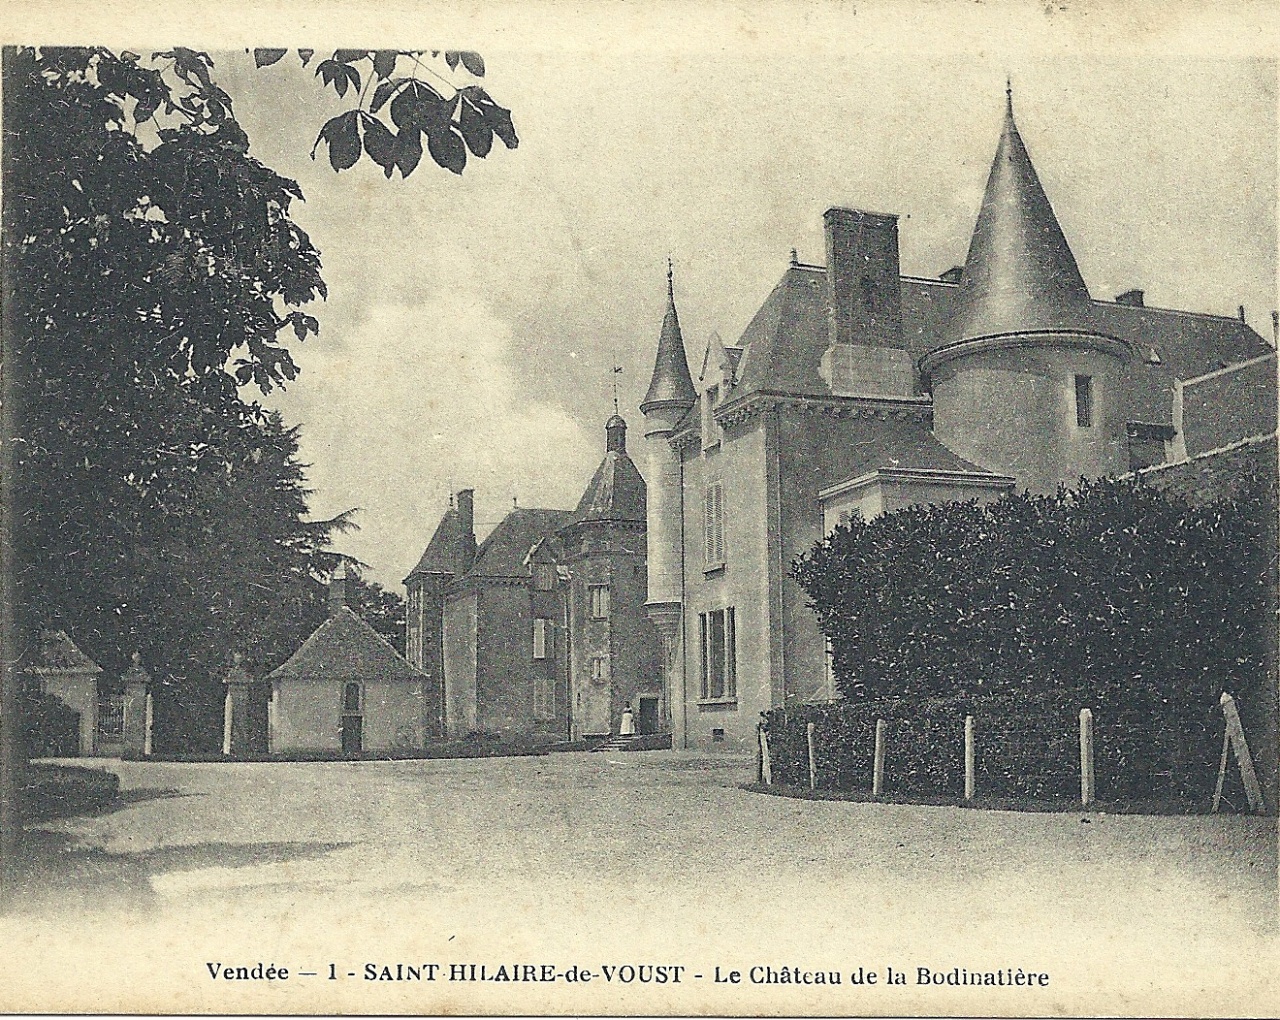 St-Hilaire-de-Voust, le château de la Bodinatière.